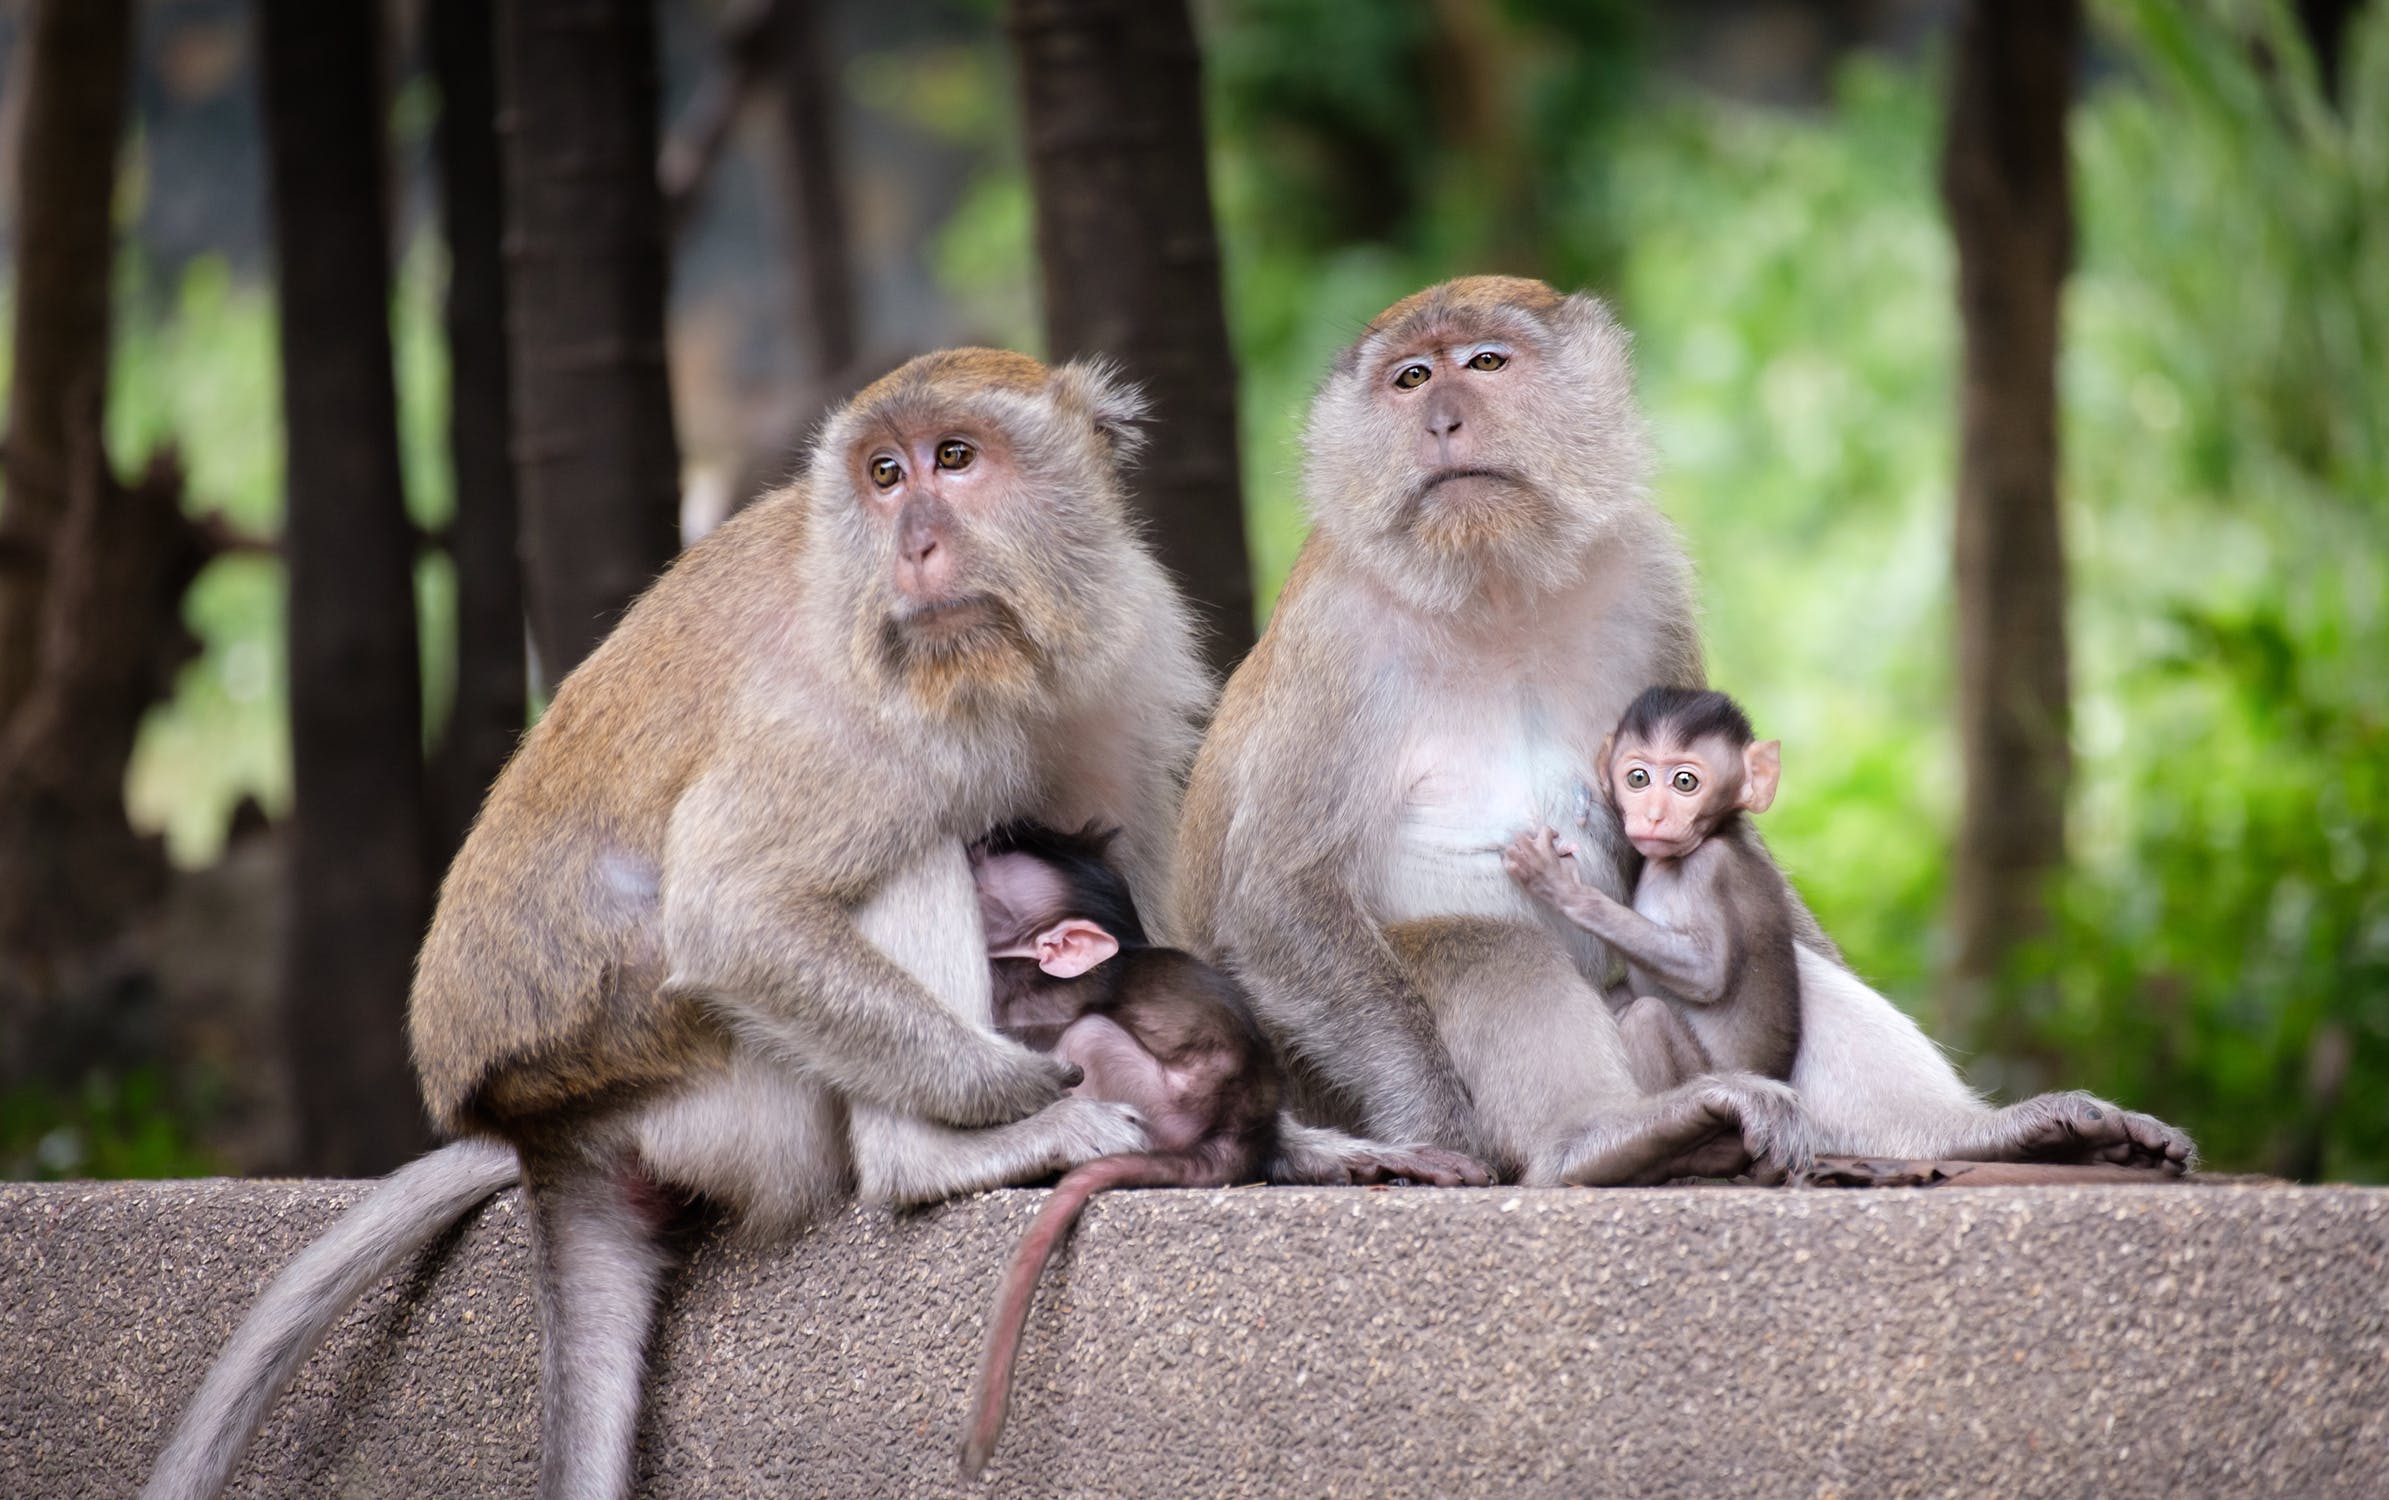 primate social behavior